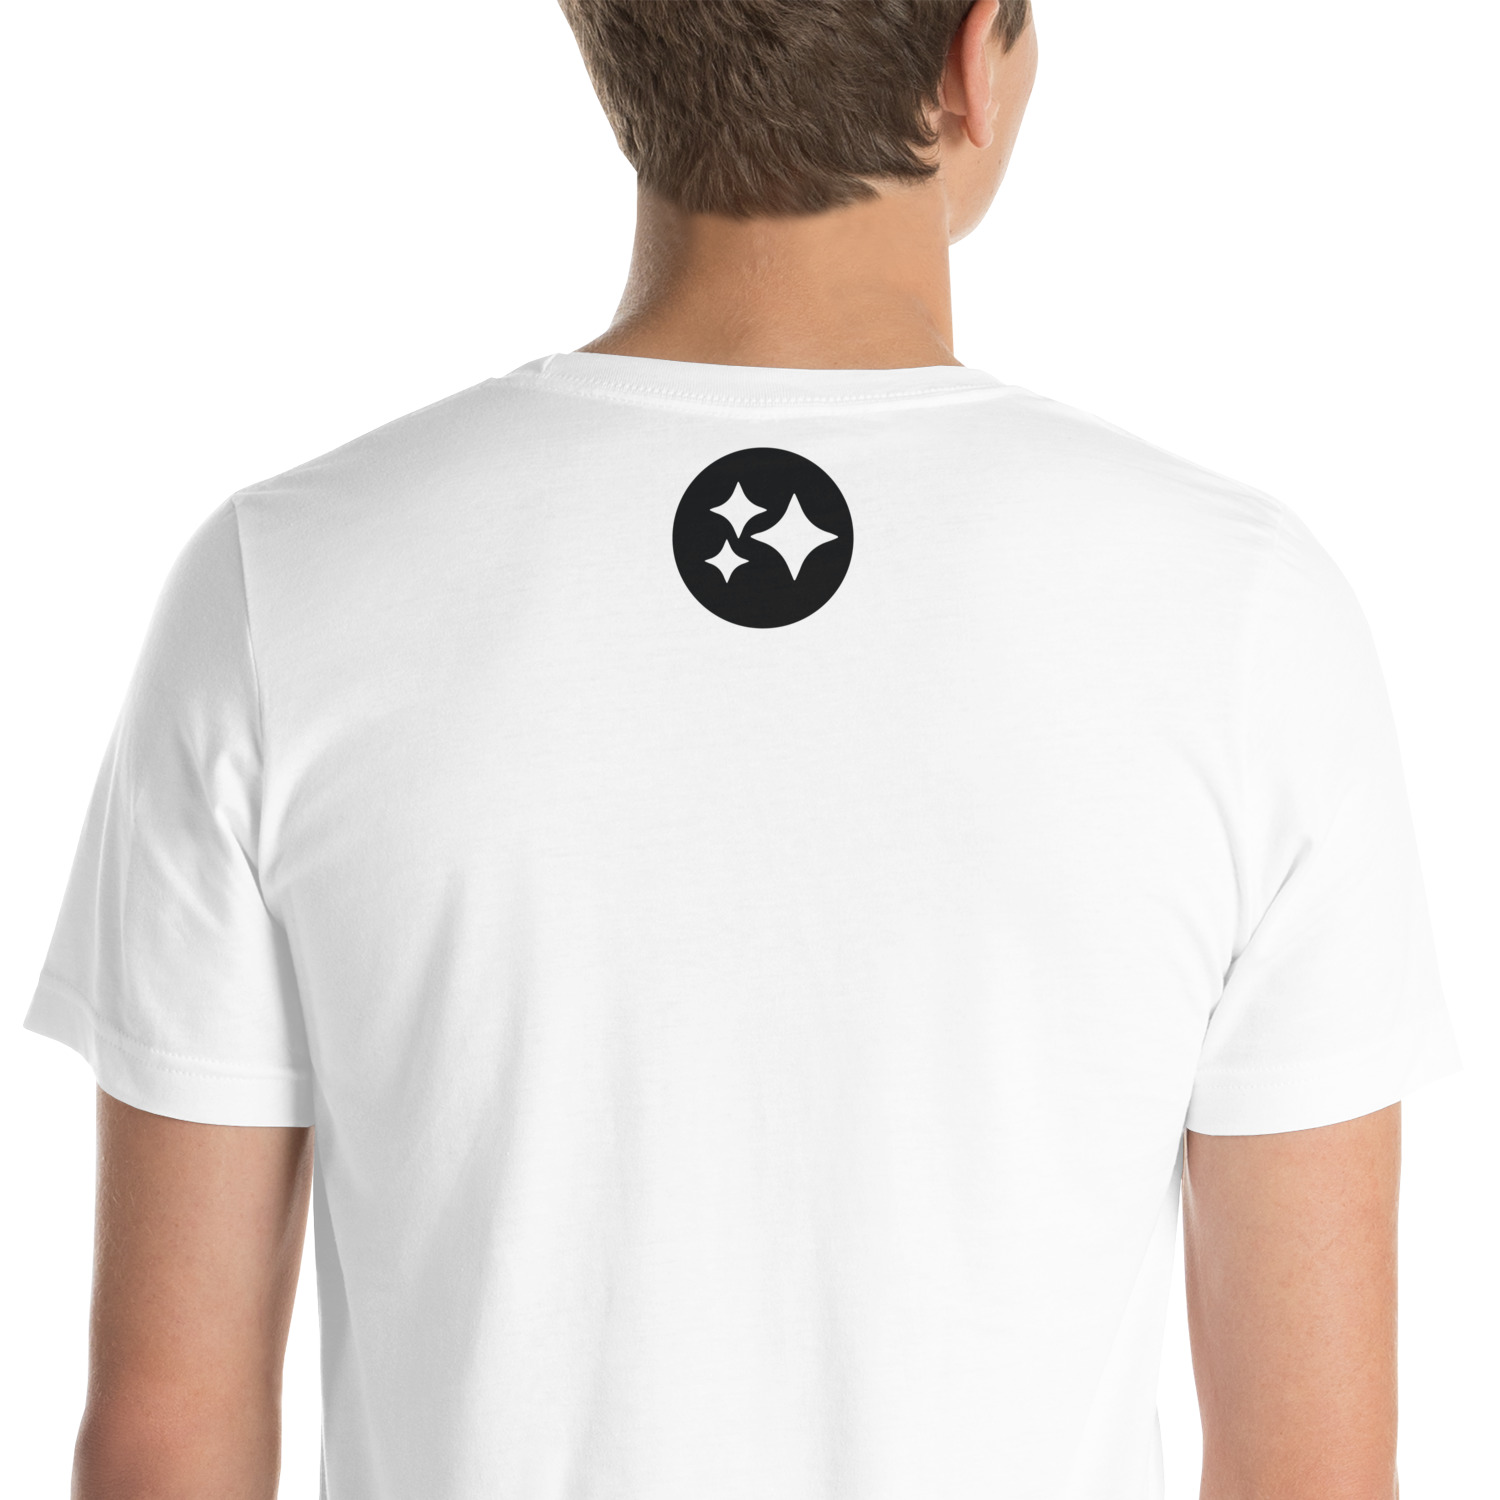 unisex-staple-t-shirt-white-zoomed-in-63234eac1e5b3.jpg